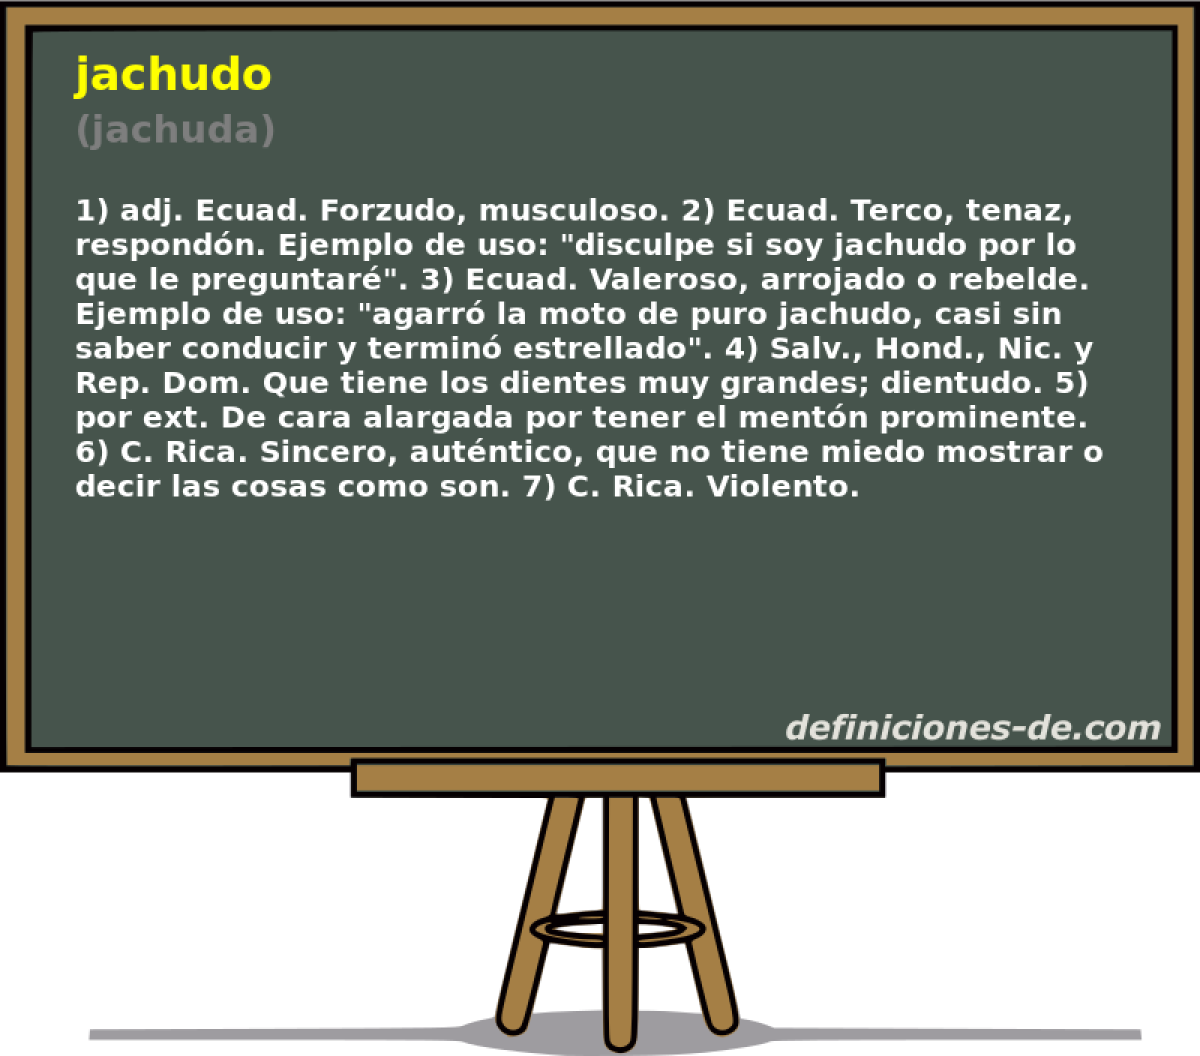 jachudo (jachuda)